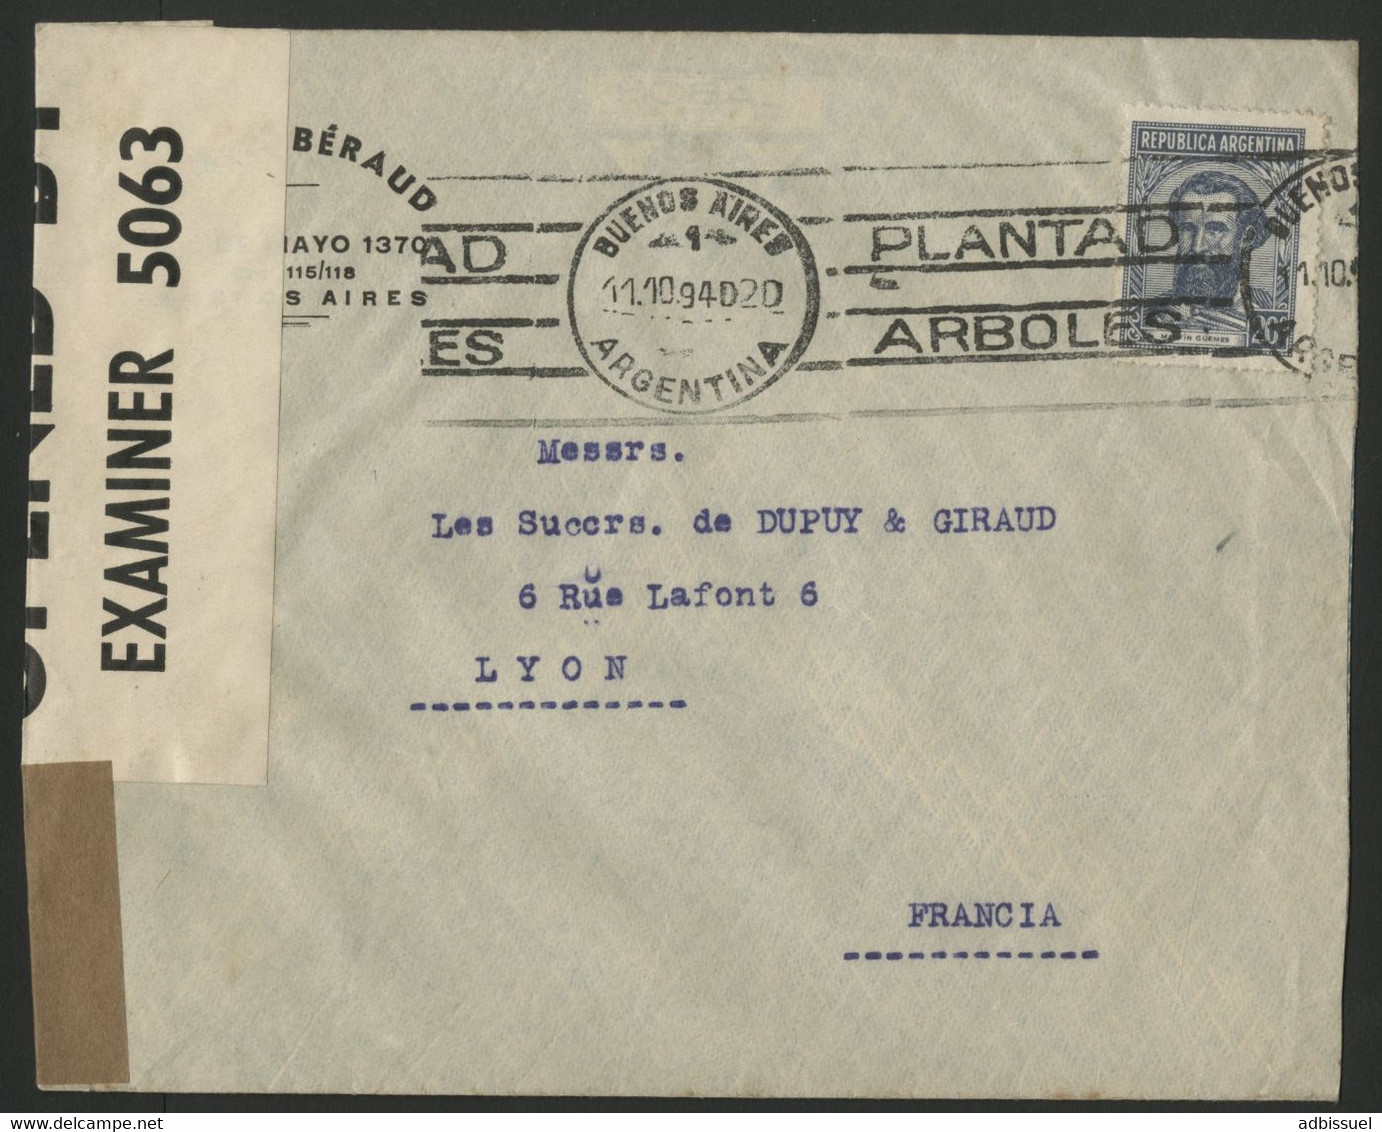 ARGENTINE Lettre Par La Voie Maritime En 1940 Pour La France Avec La Censure Anglaise Des Bermudes (voir Description) - Covers & Documents